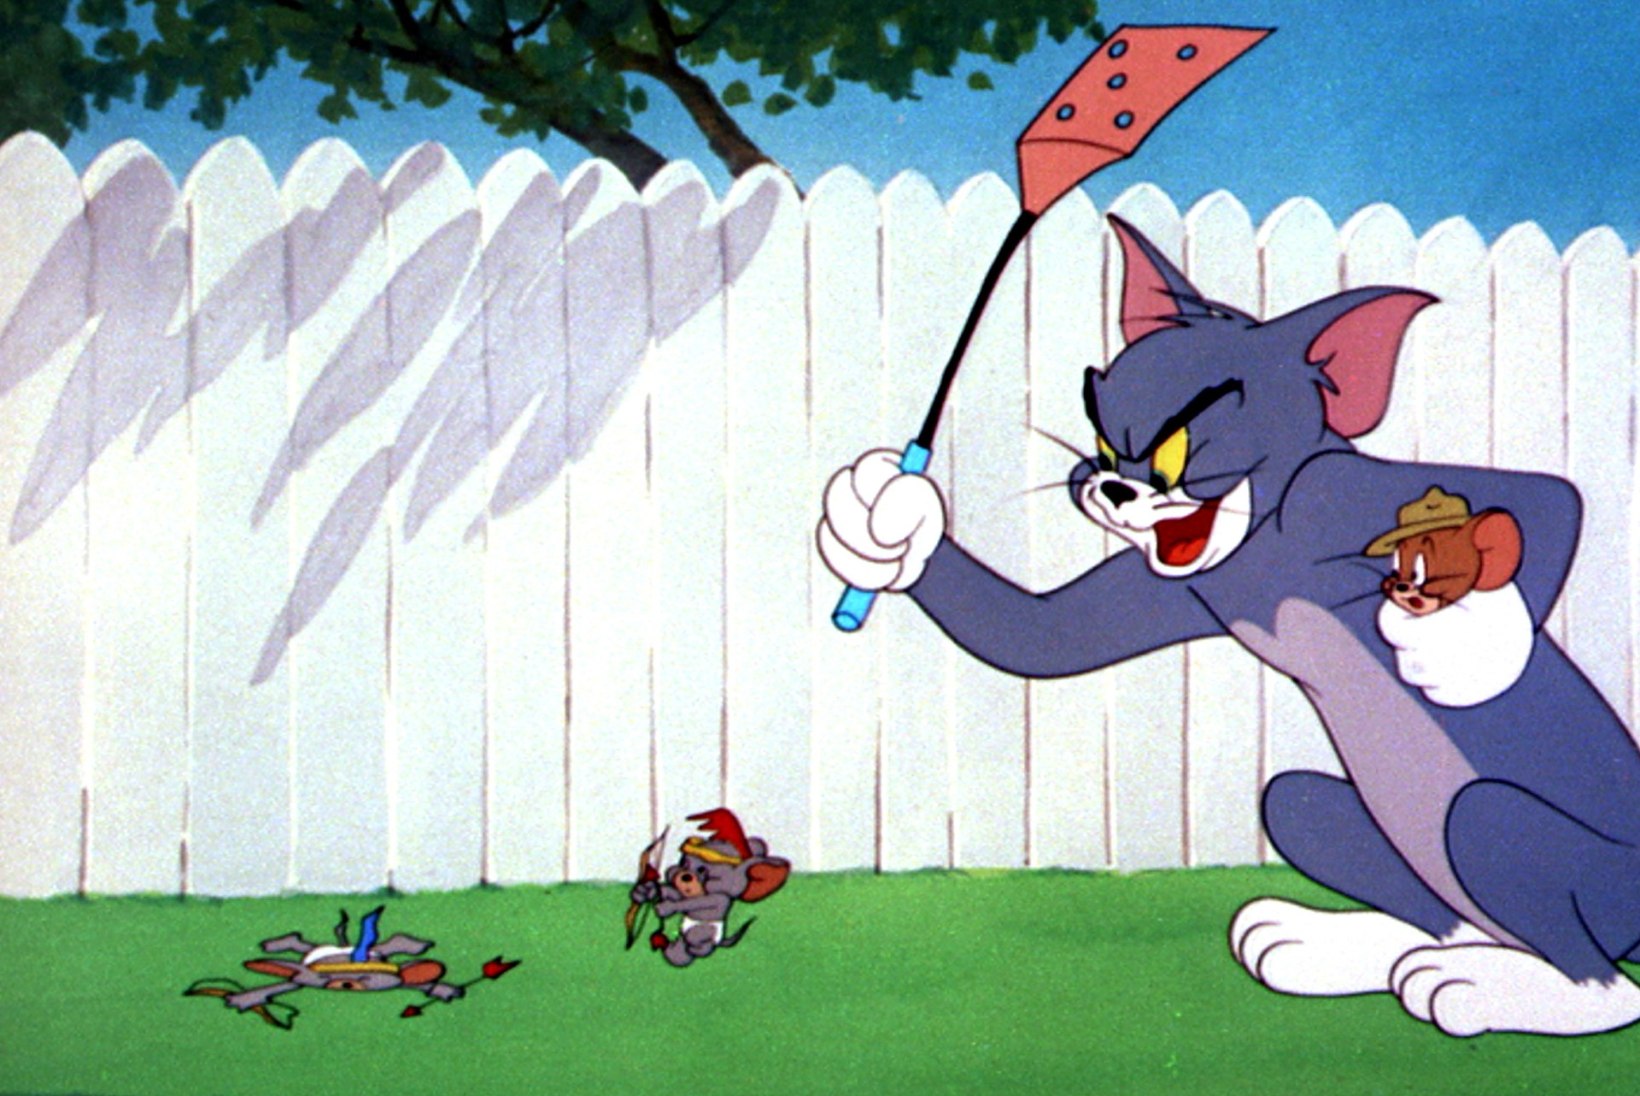 ÕHTULEHE VIDEO | 1 küsimus võrkpallikoondisele: "Tom & Jerry" või "Muumitrollid"?